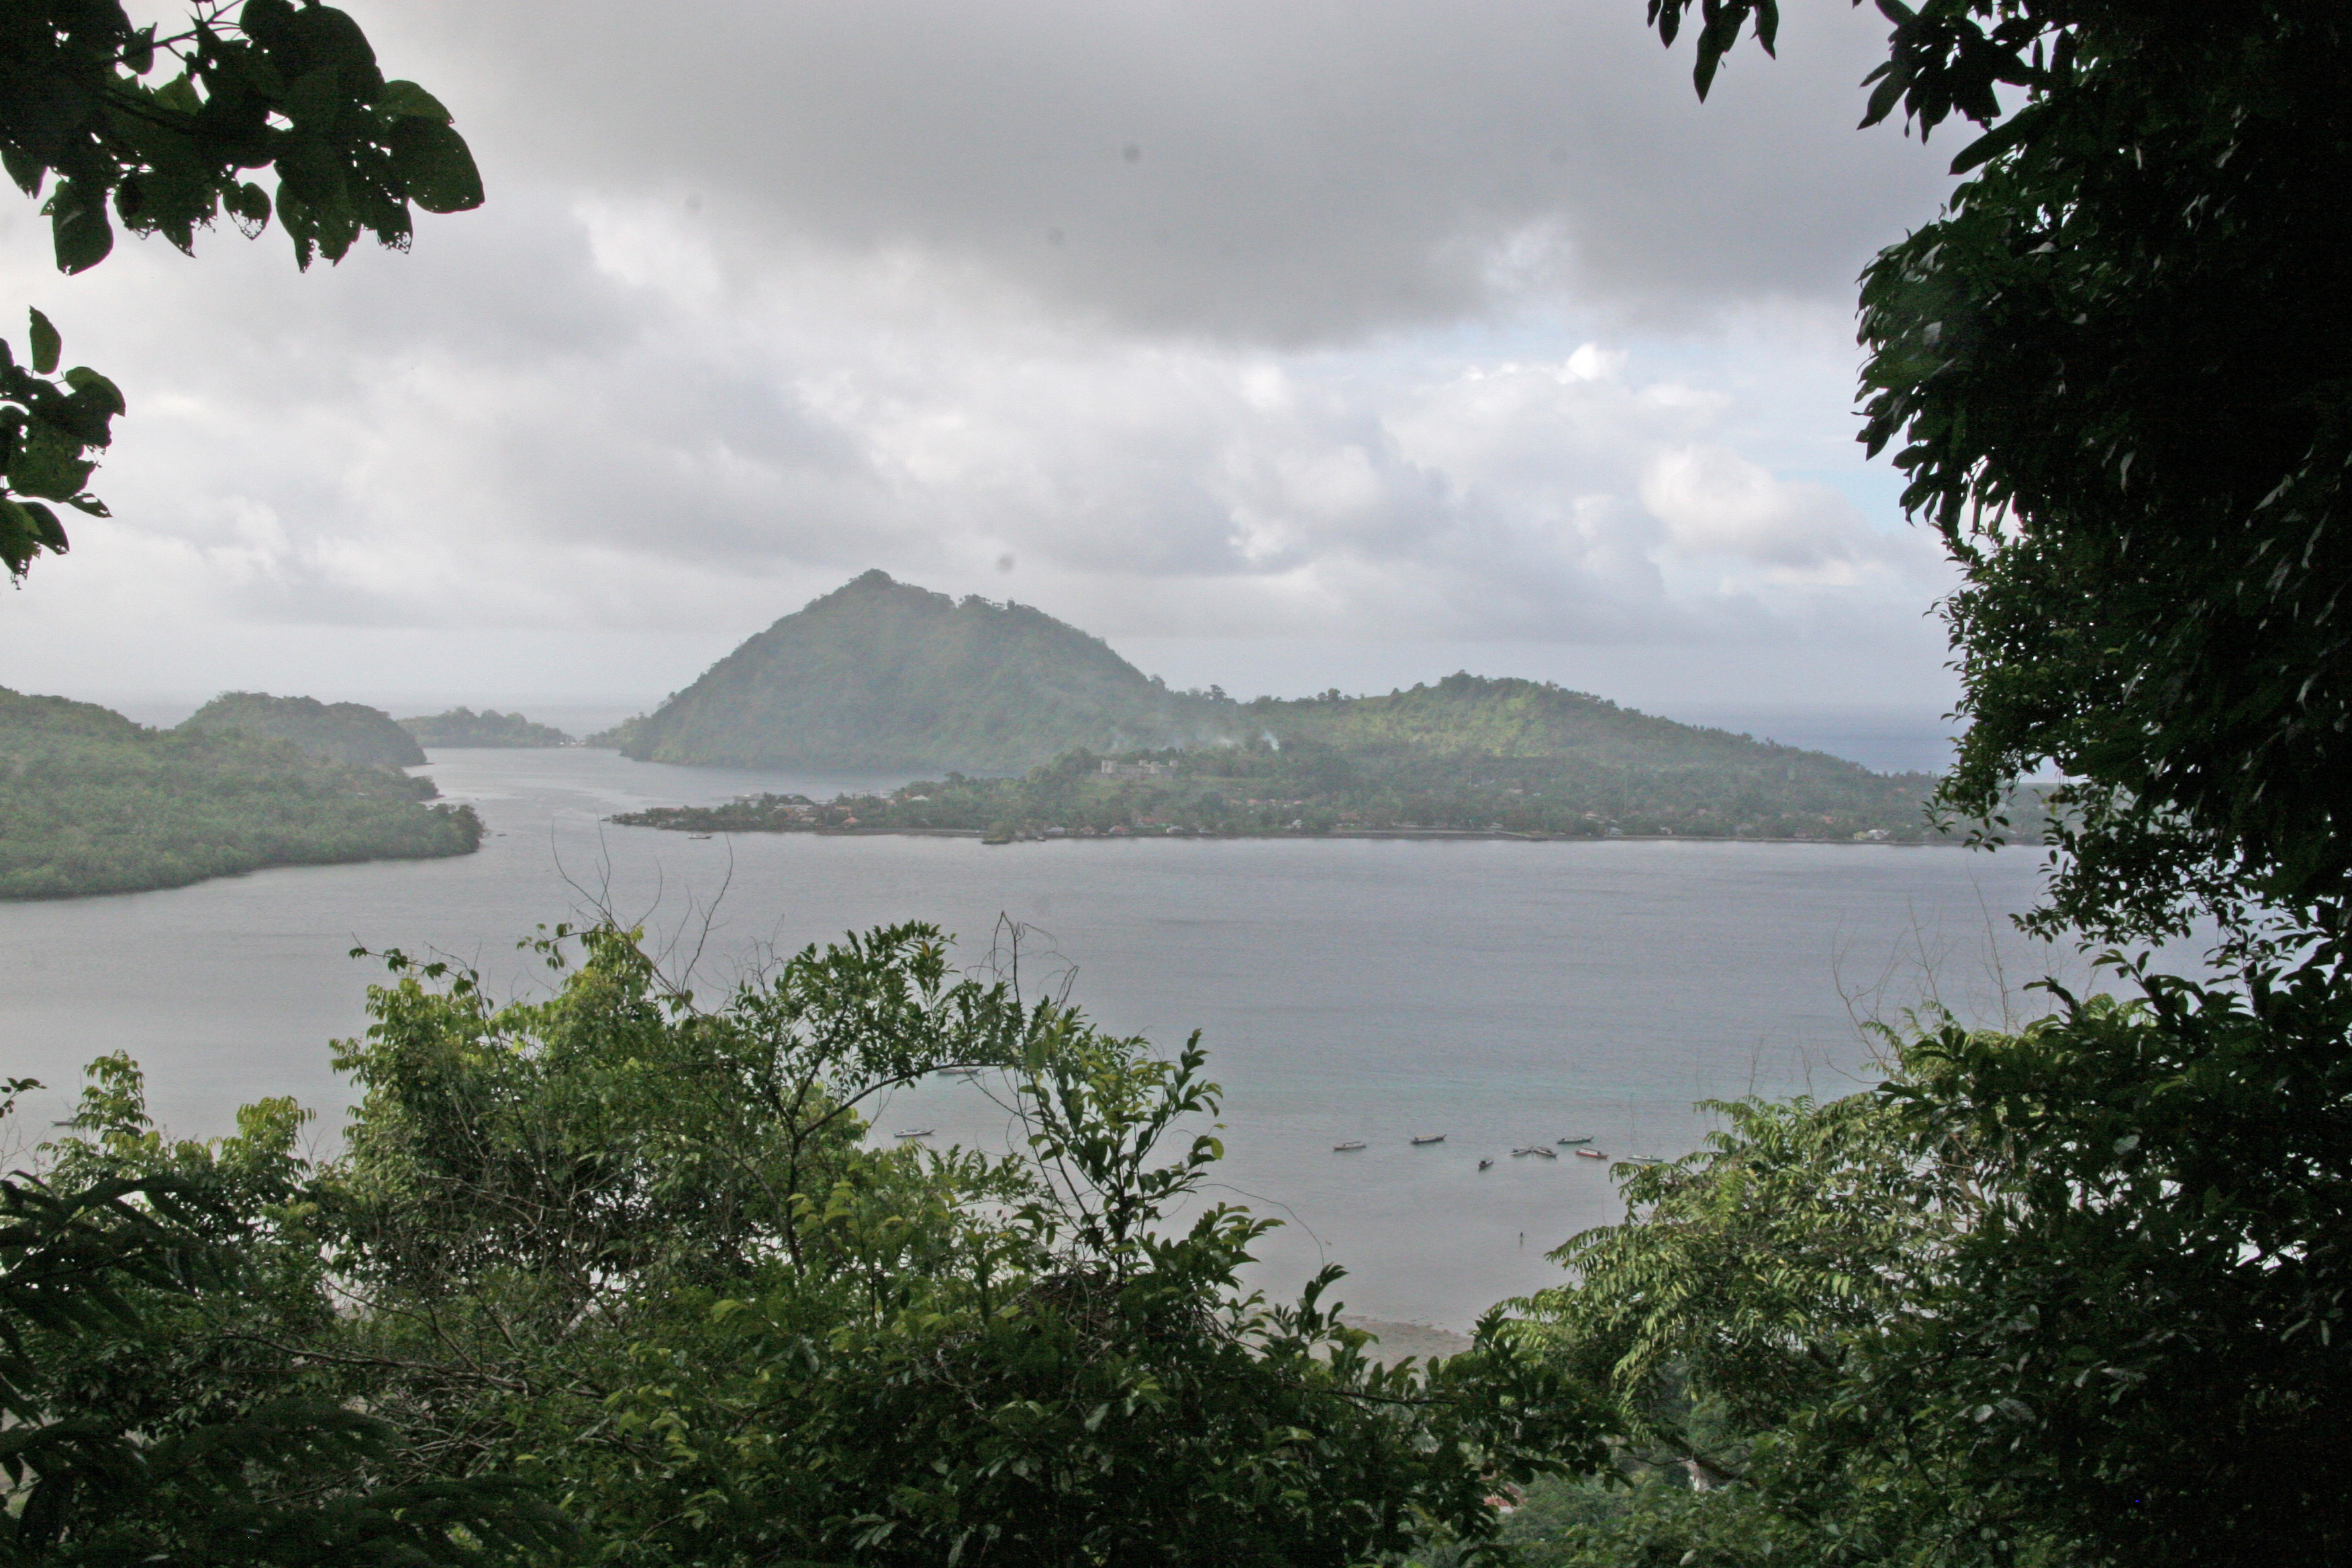 View of Banda from Orang Datang